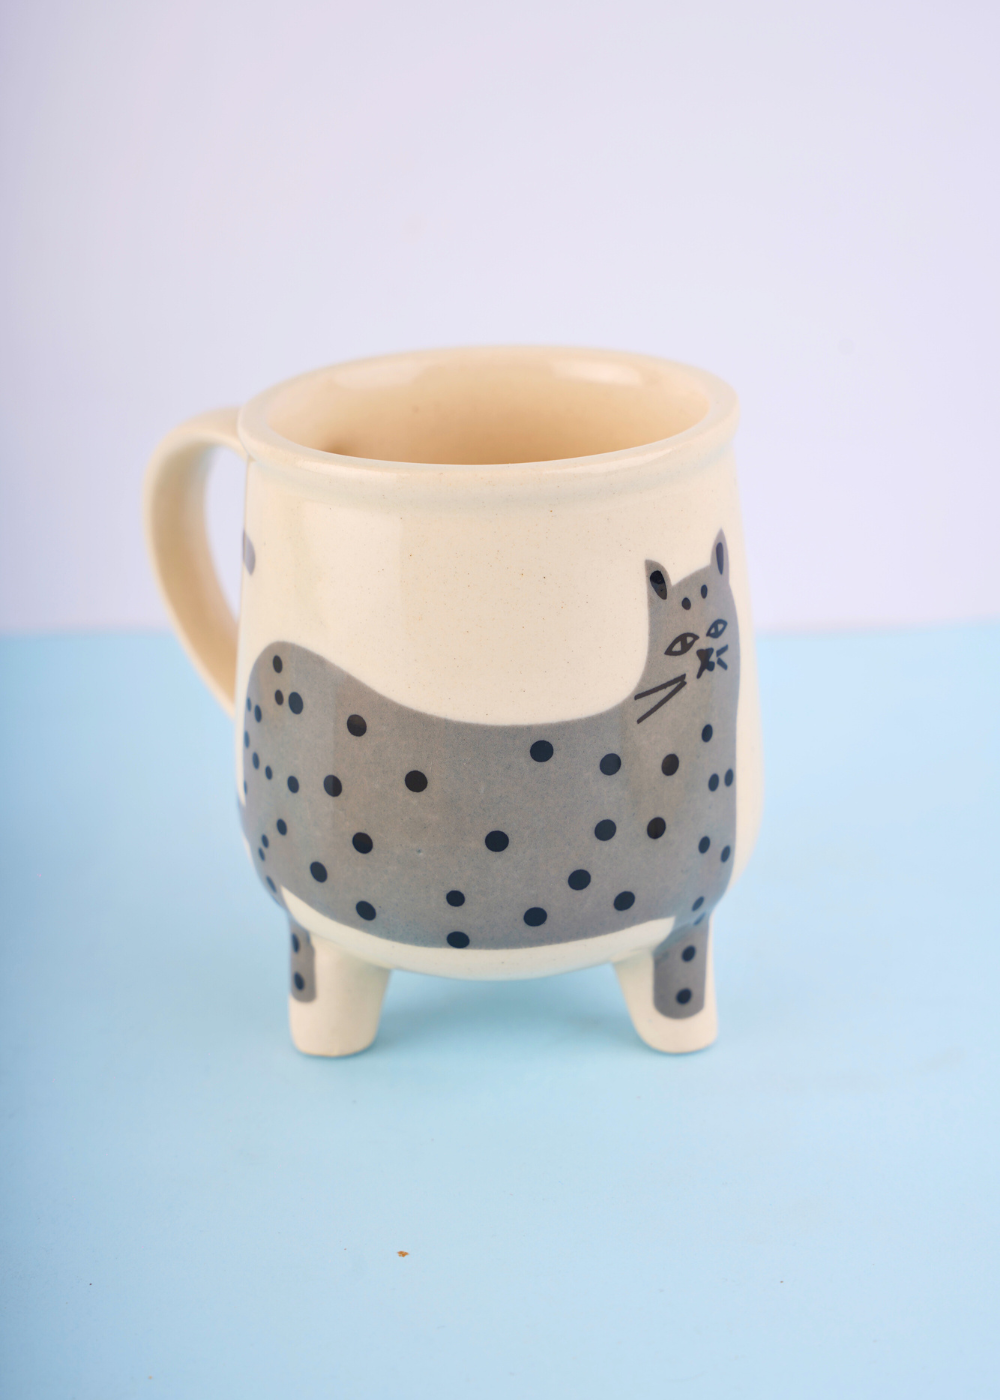 grey cat mug made by ceramic 